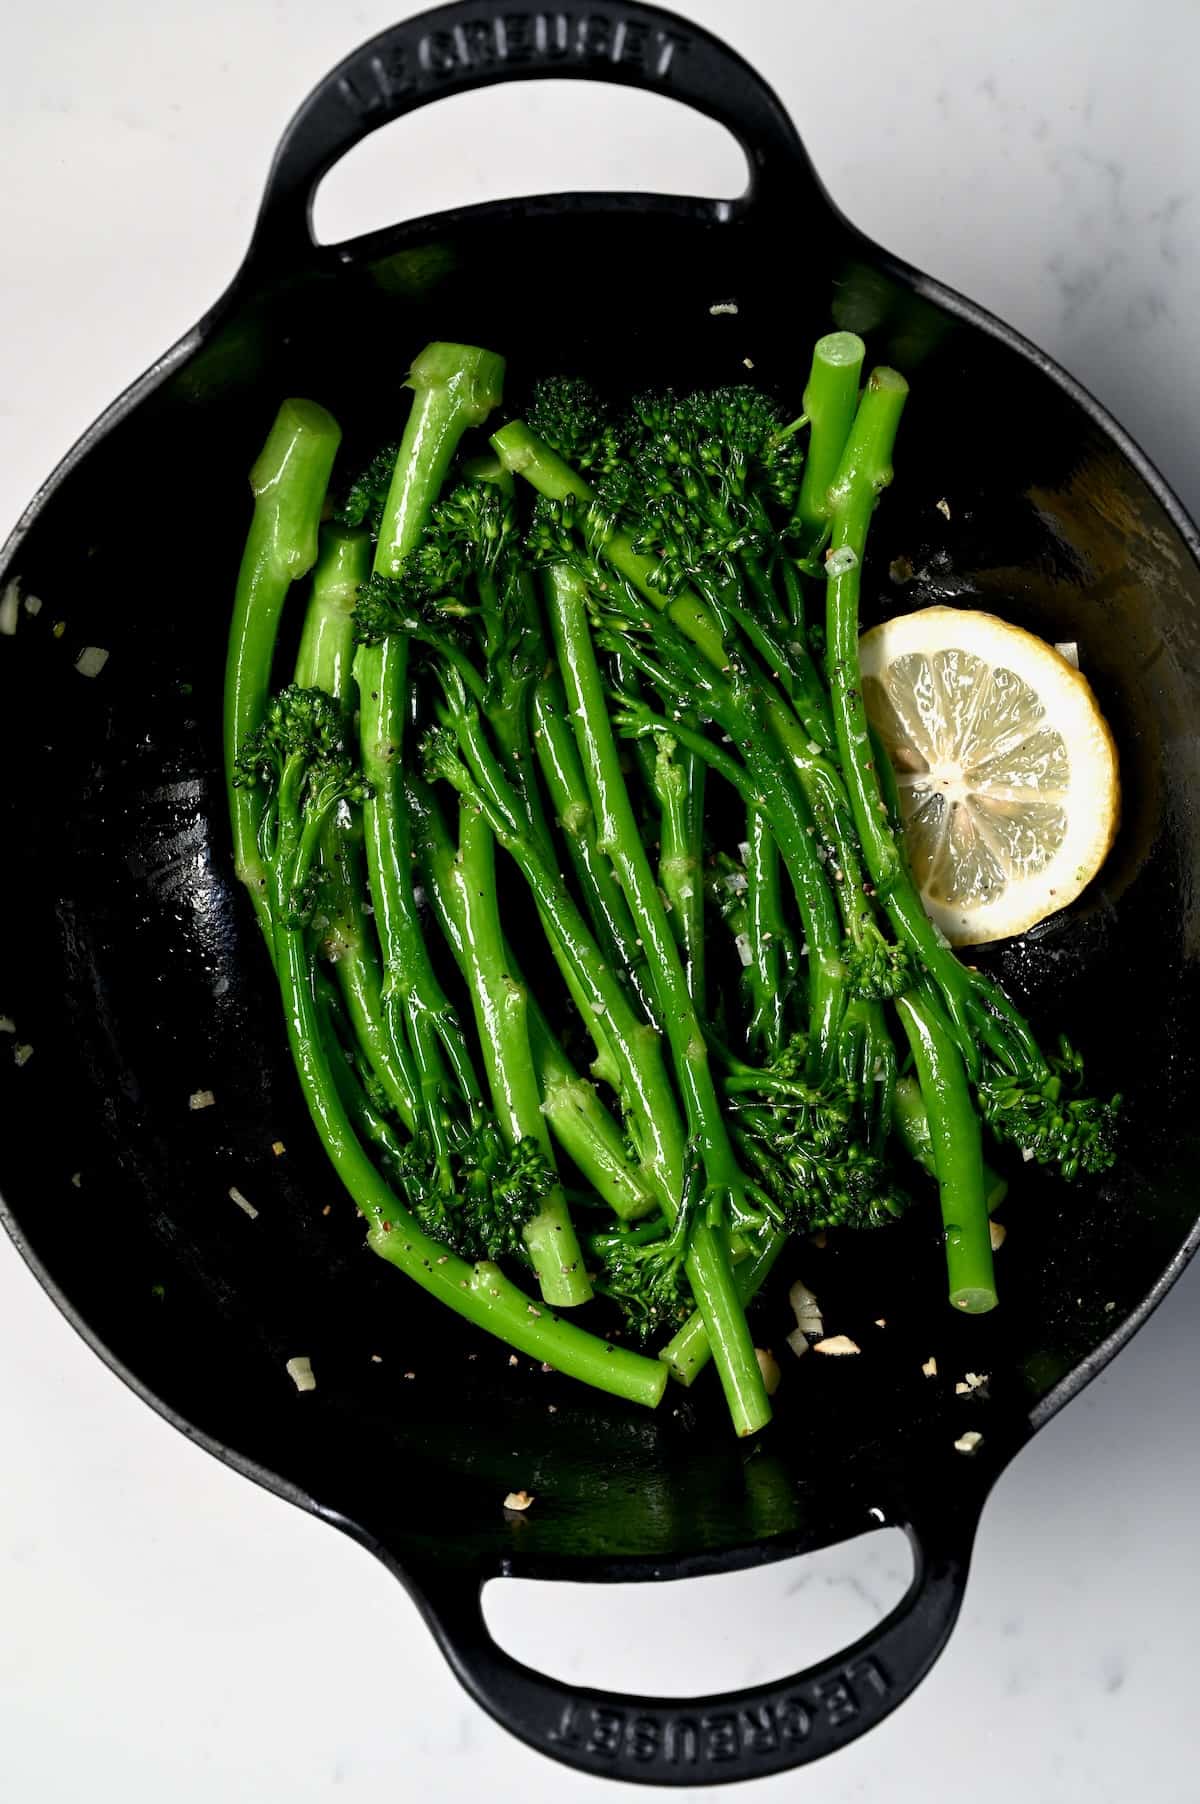 Sauteed broccolini in a pan